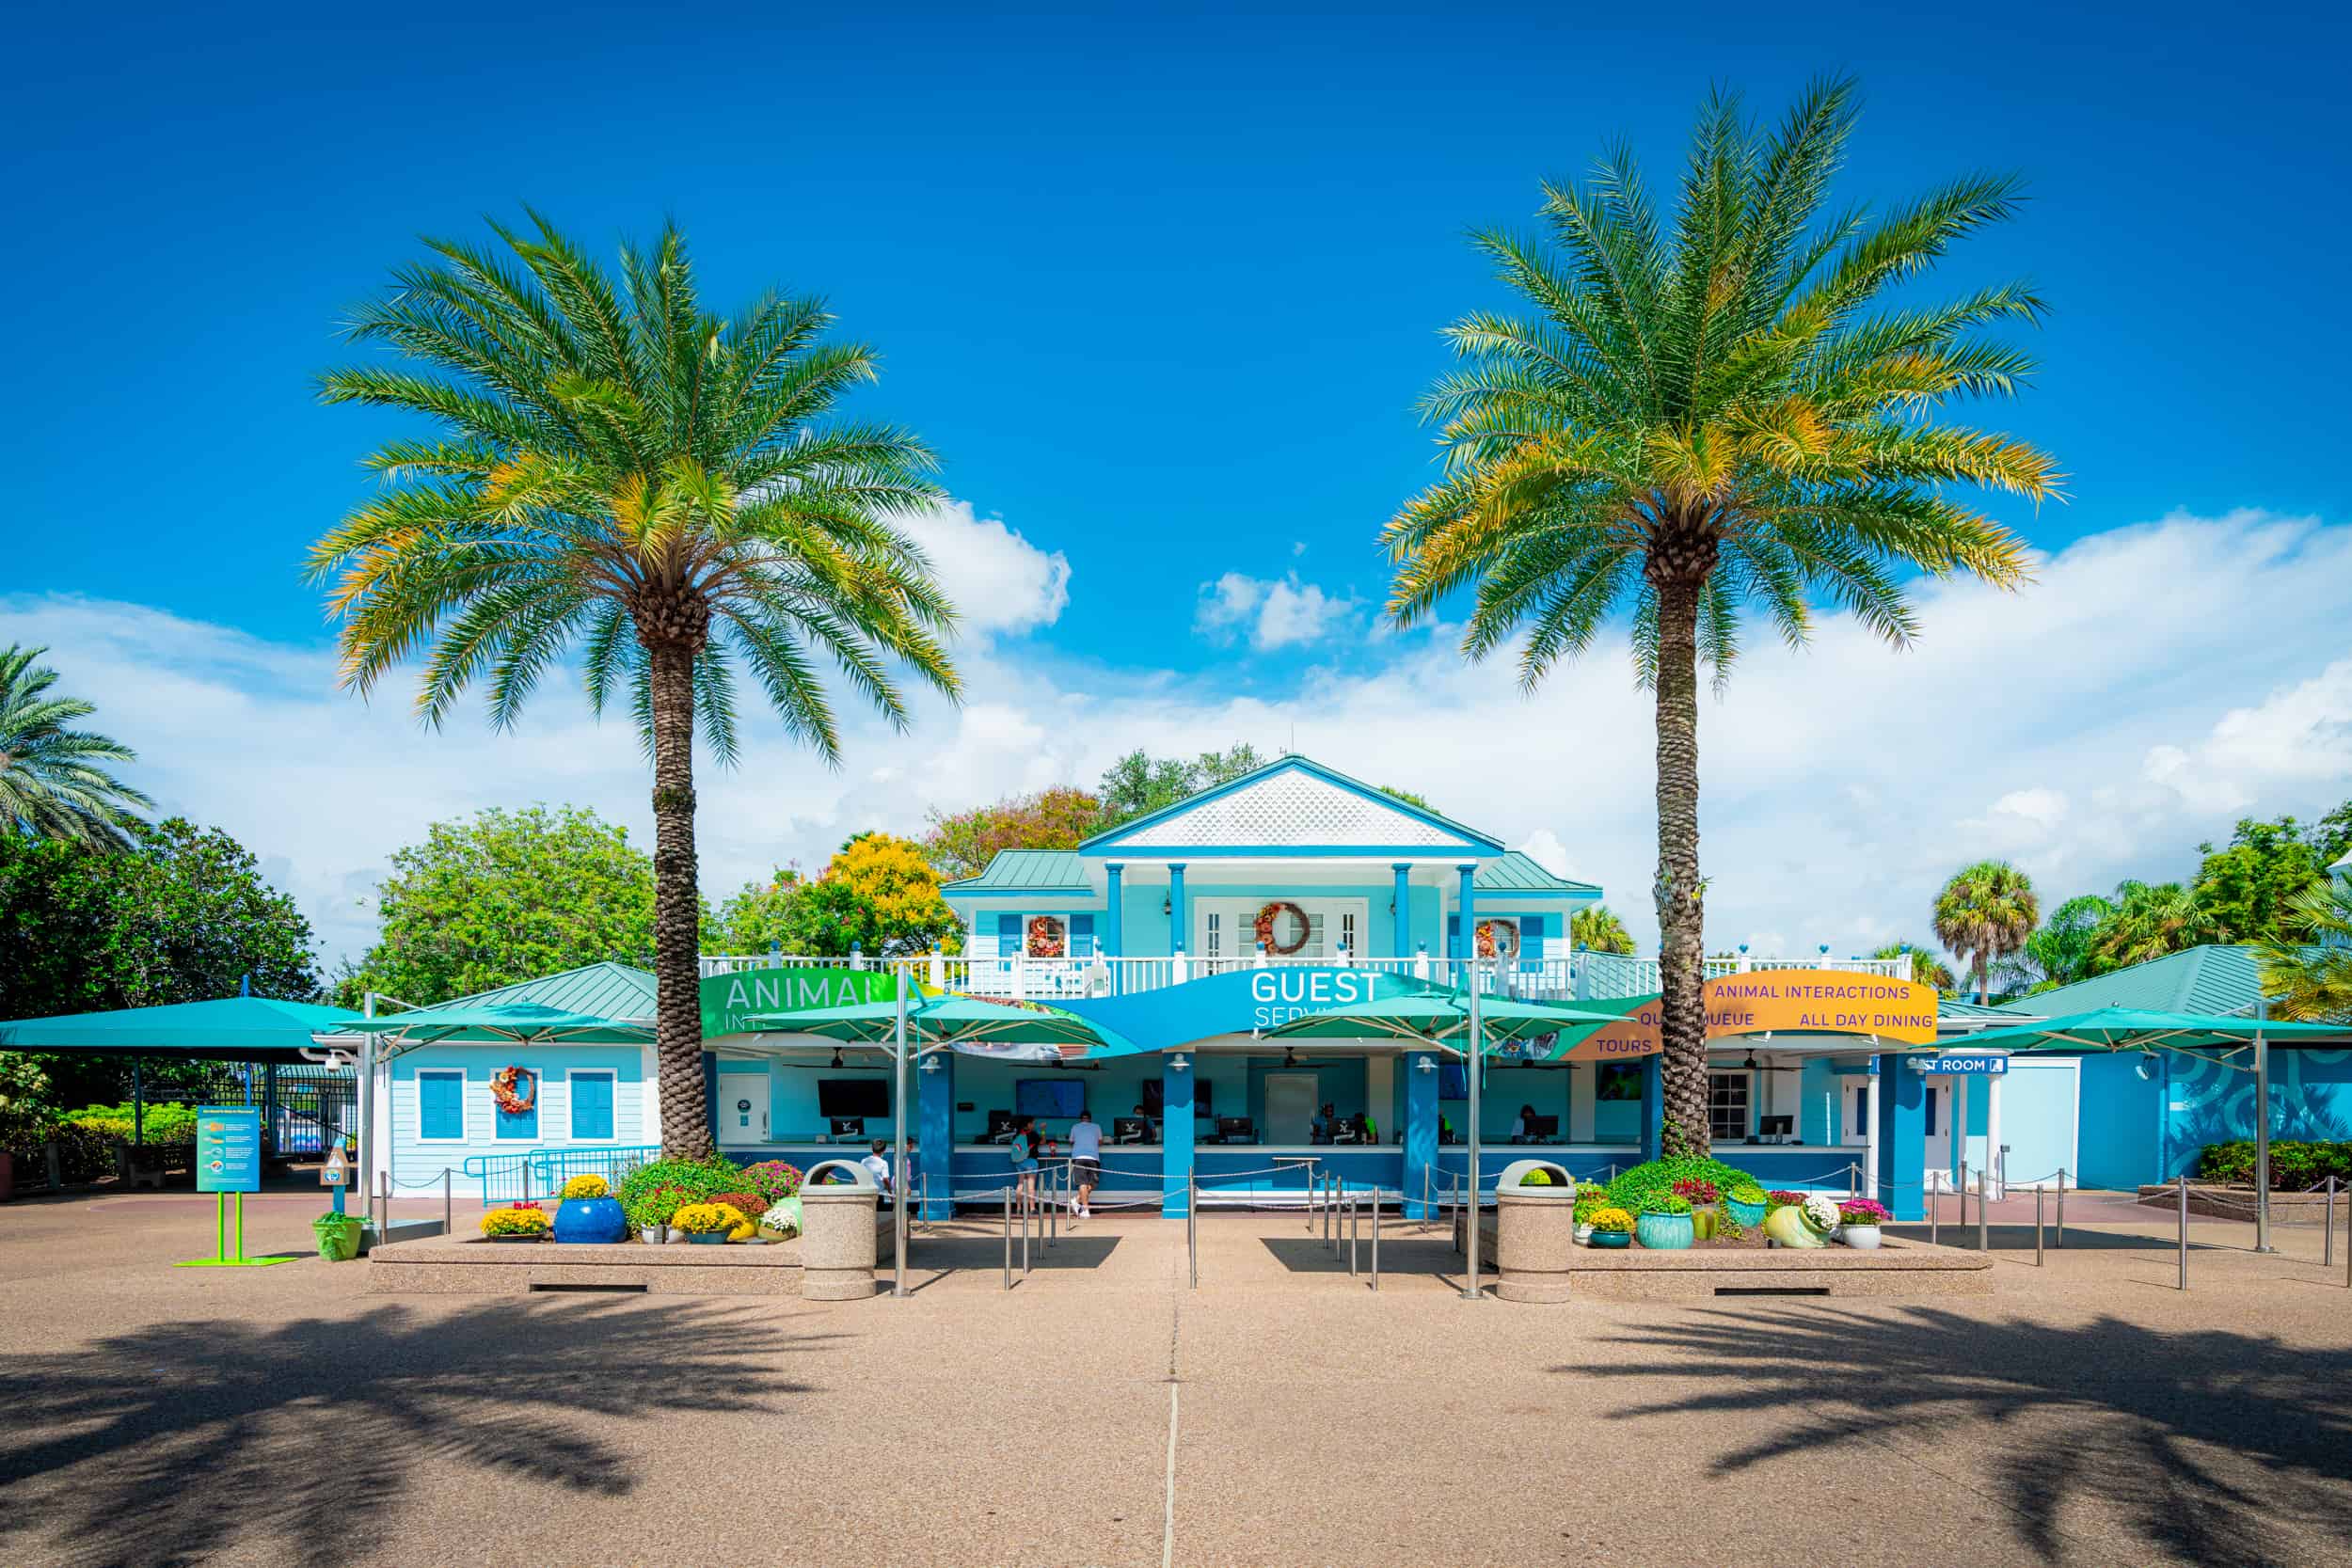 Lugares esenciales para el cuidado de bebés y niños en SeaWorld Orlando